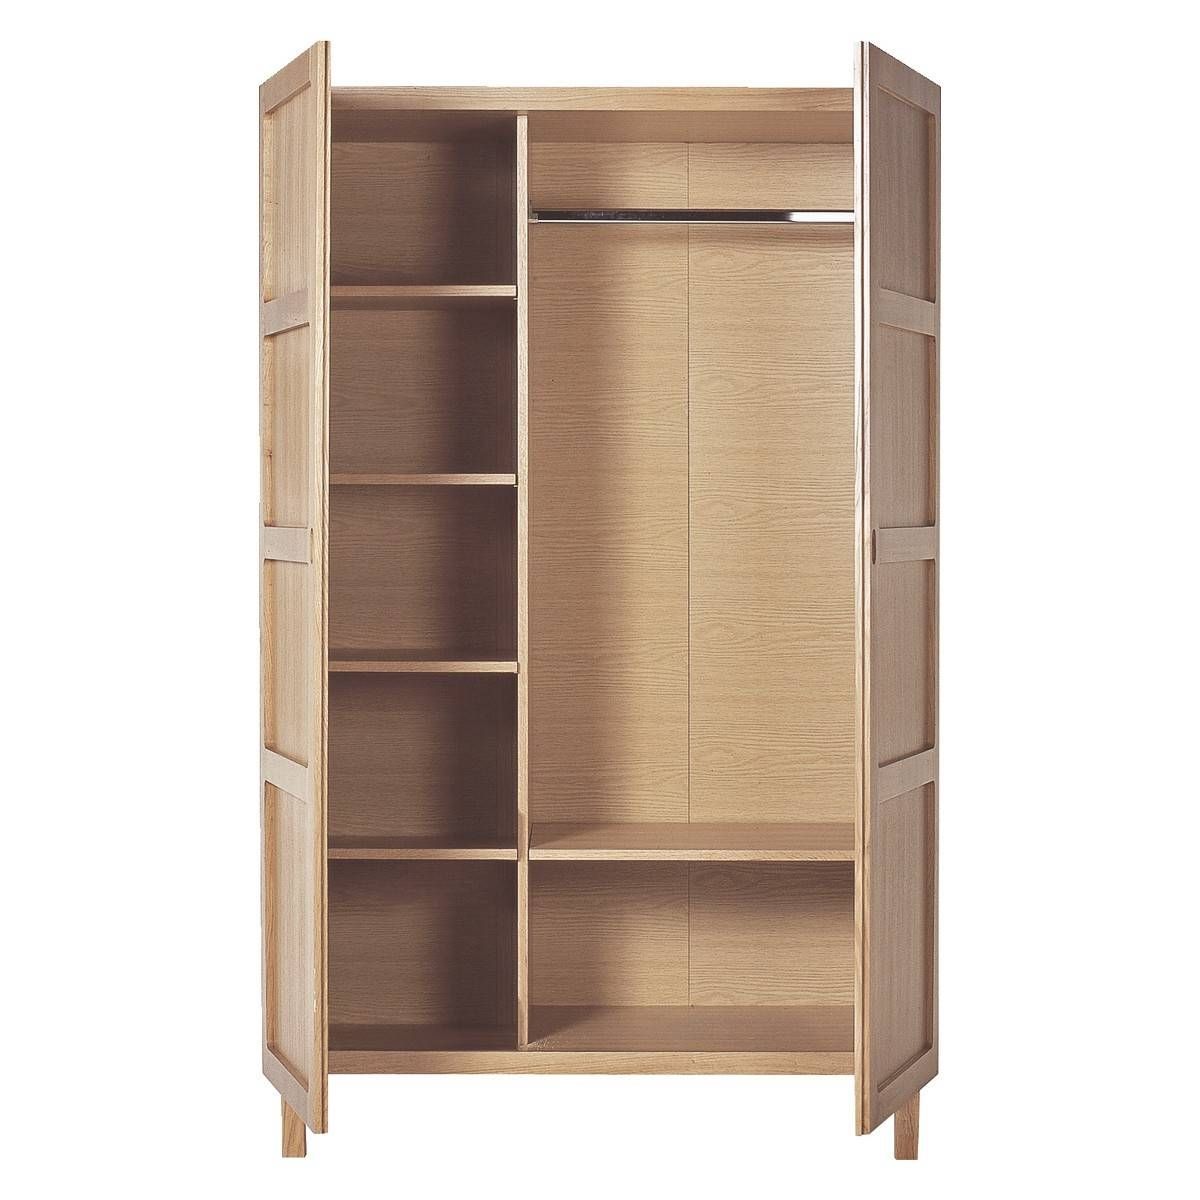 Two Door Wardrobe With Shelves | Hallway Furniture Ideas Intended For Wardrobe With Shelves And Drawers (View 10 of 30)